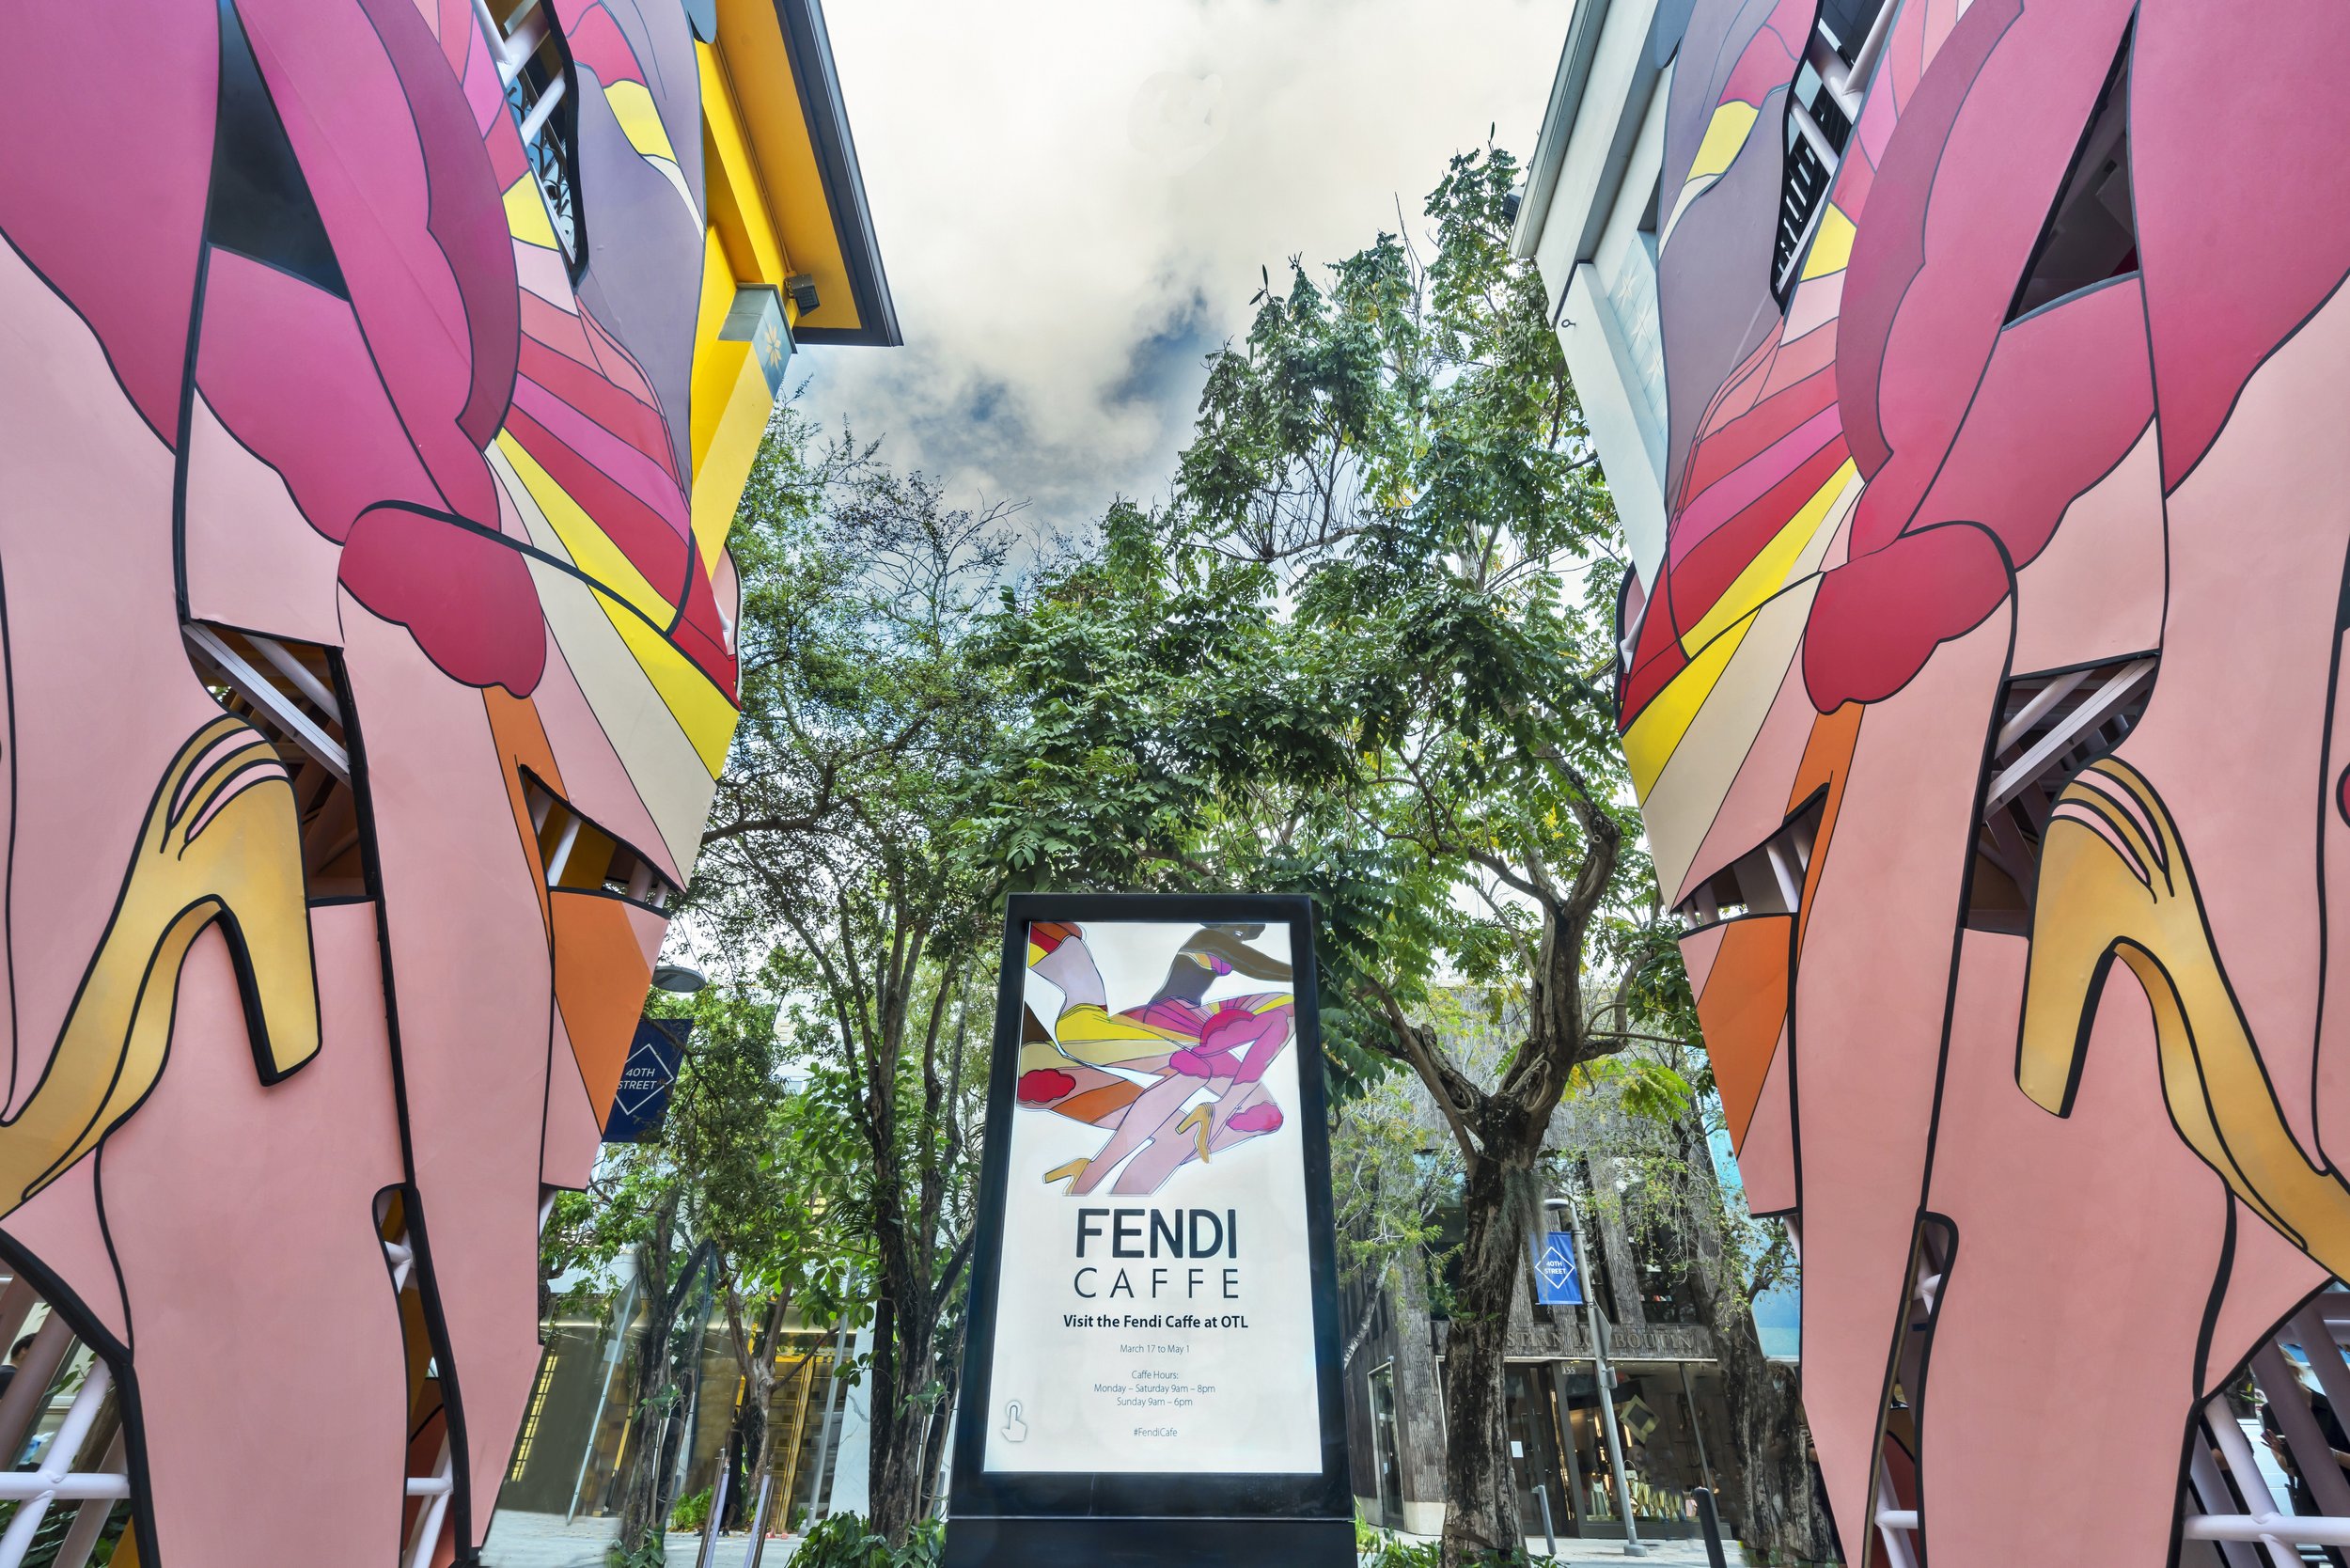 Fendi Miami Design District - Miami, FL - Local Business